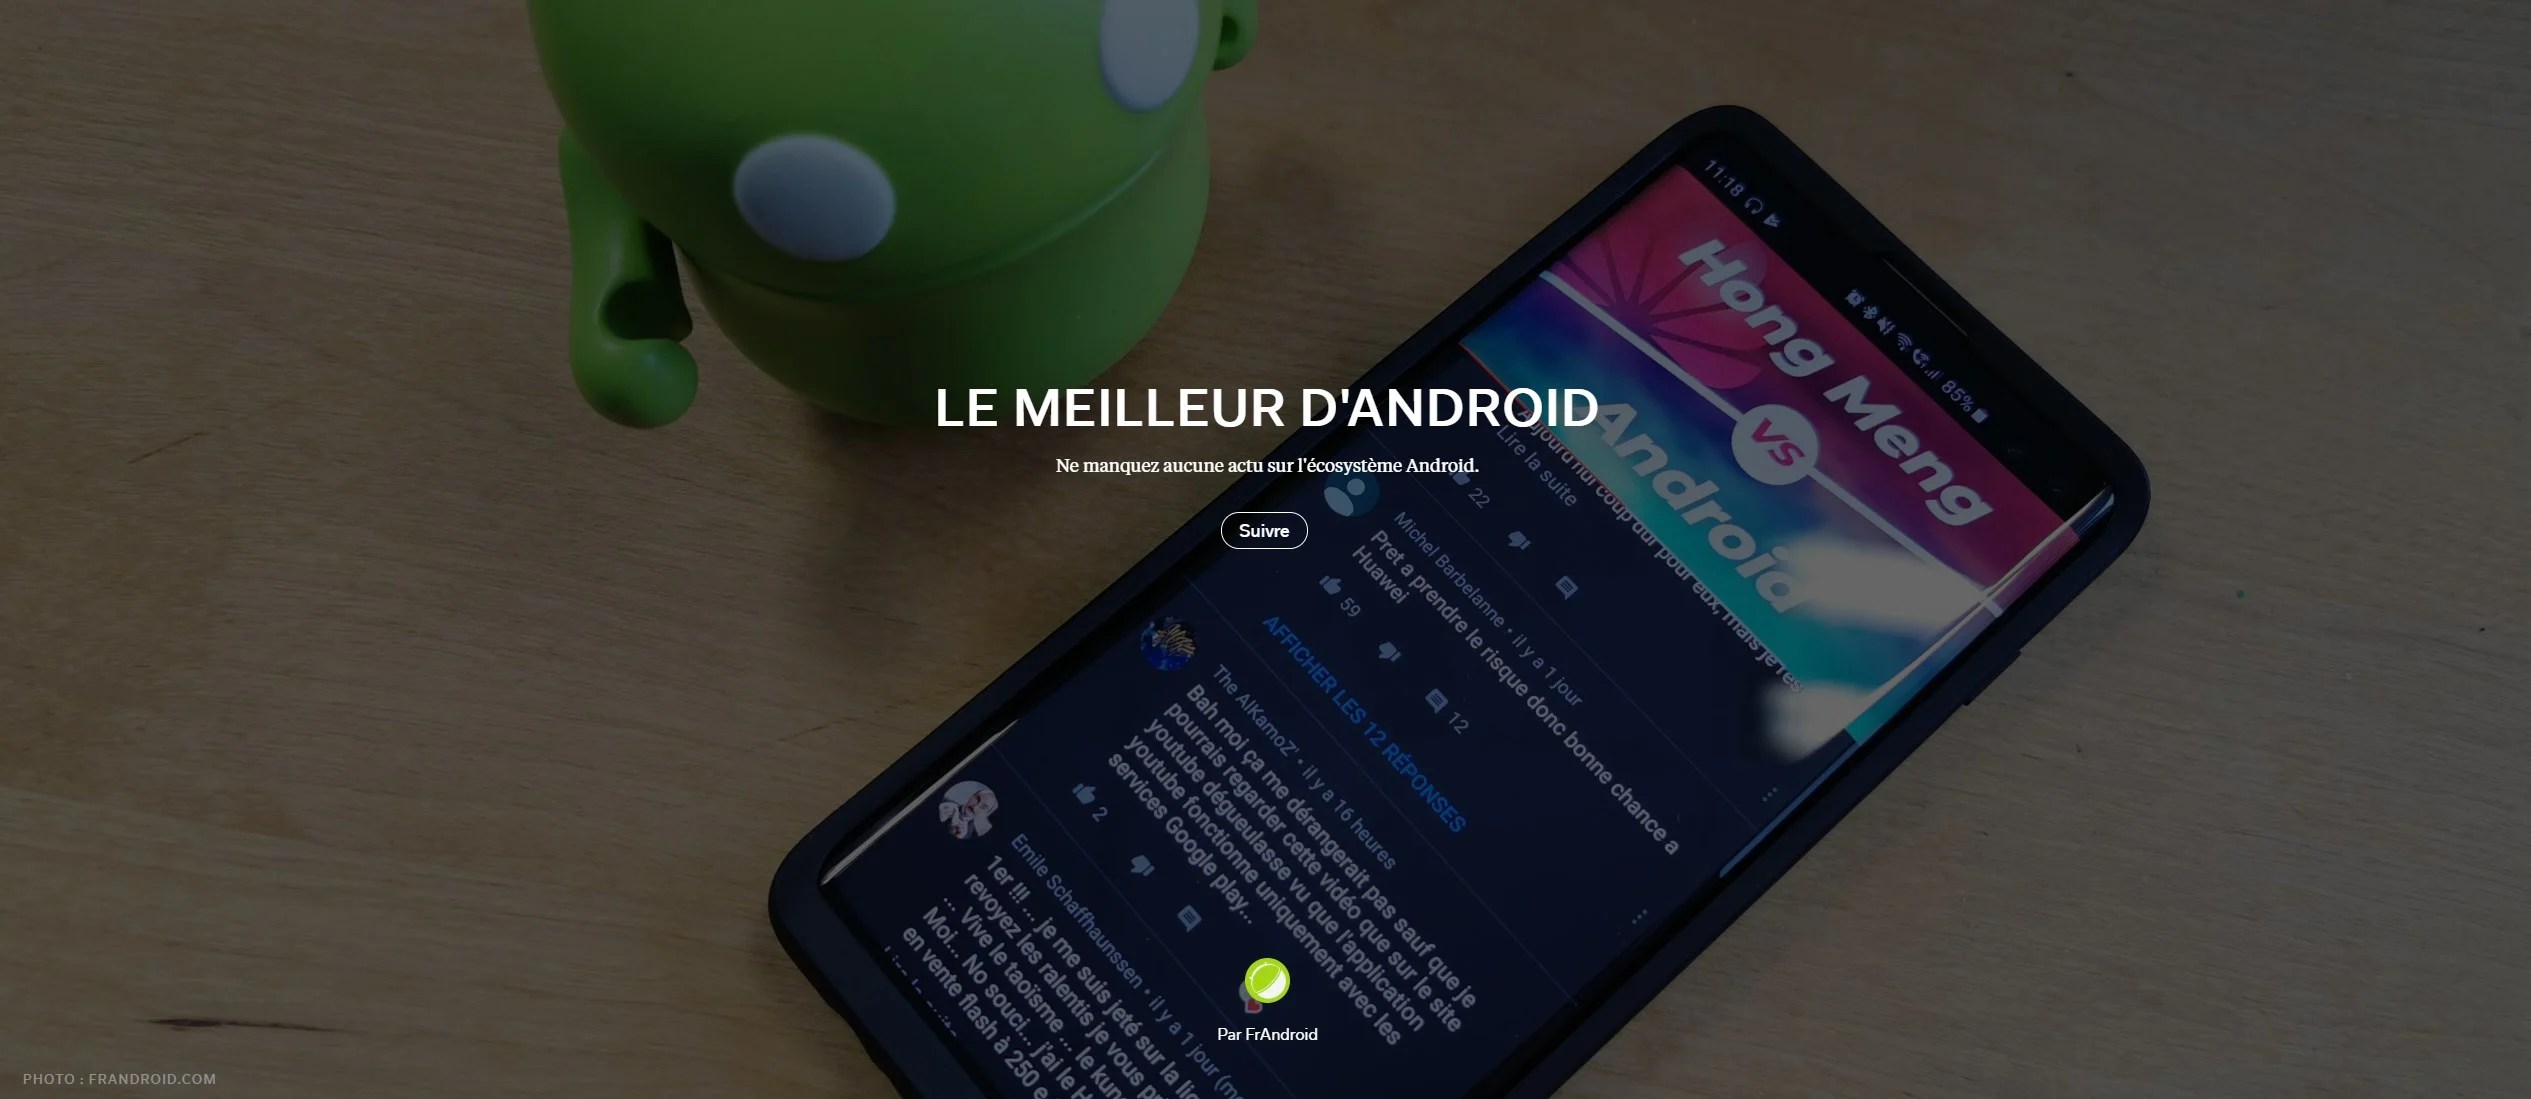 Actualités Android, tests, télécom… retrouvez FrAndroid par thèmes sur Flipboard